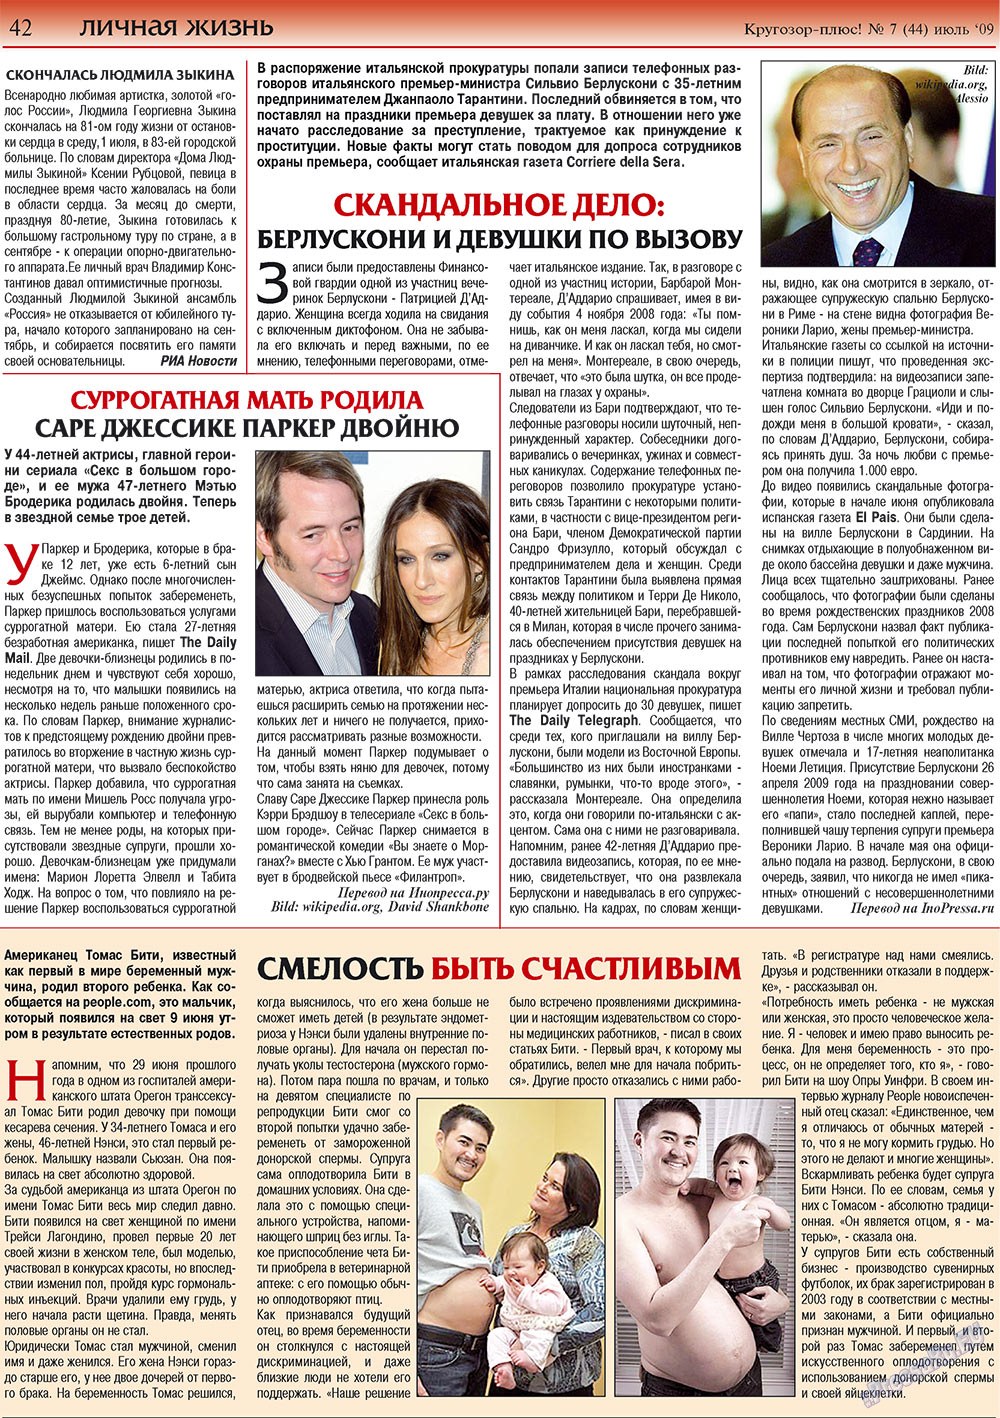 Кругозор плюс!, газета. 2009 №7 стр.42